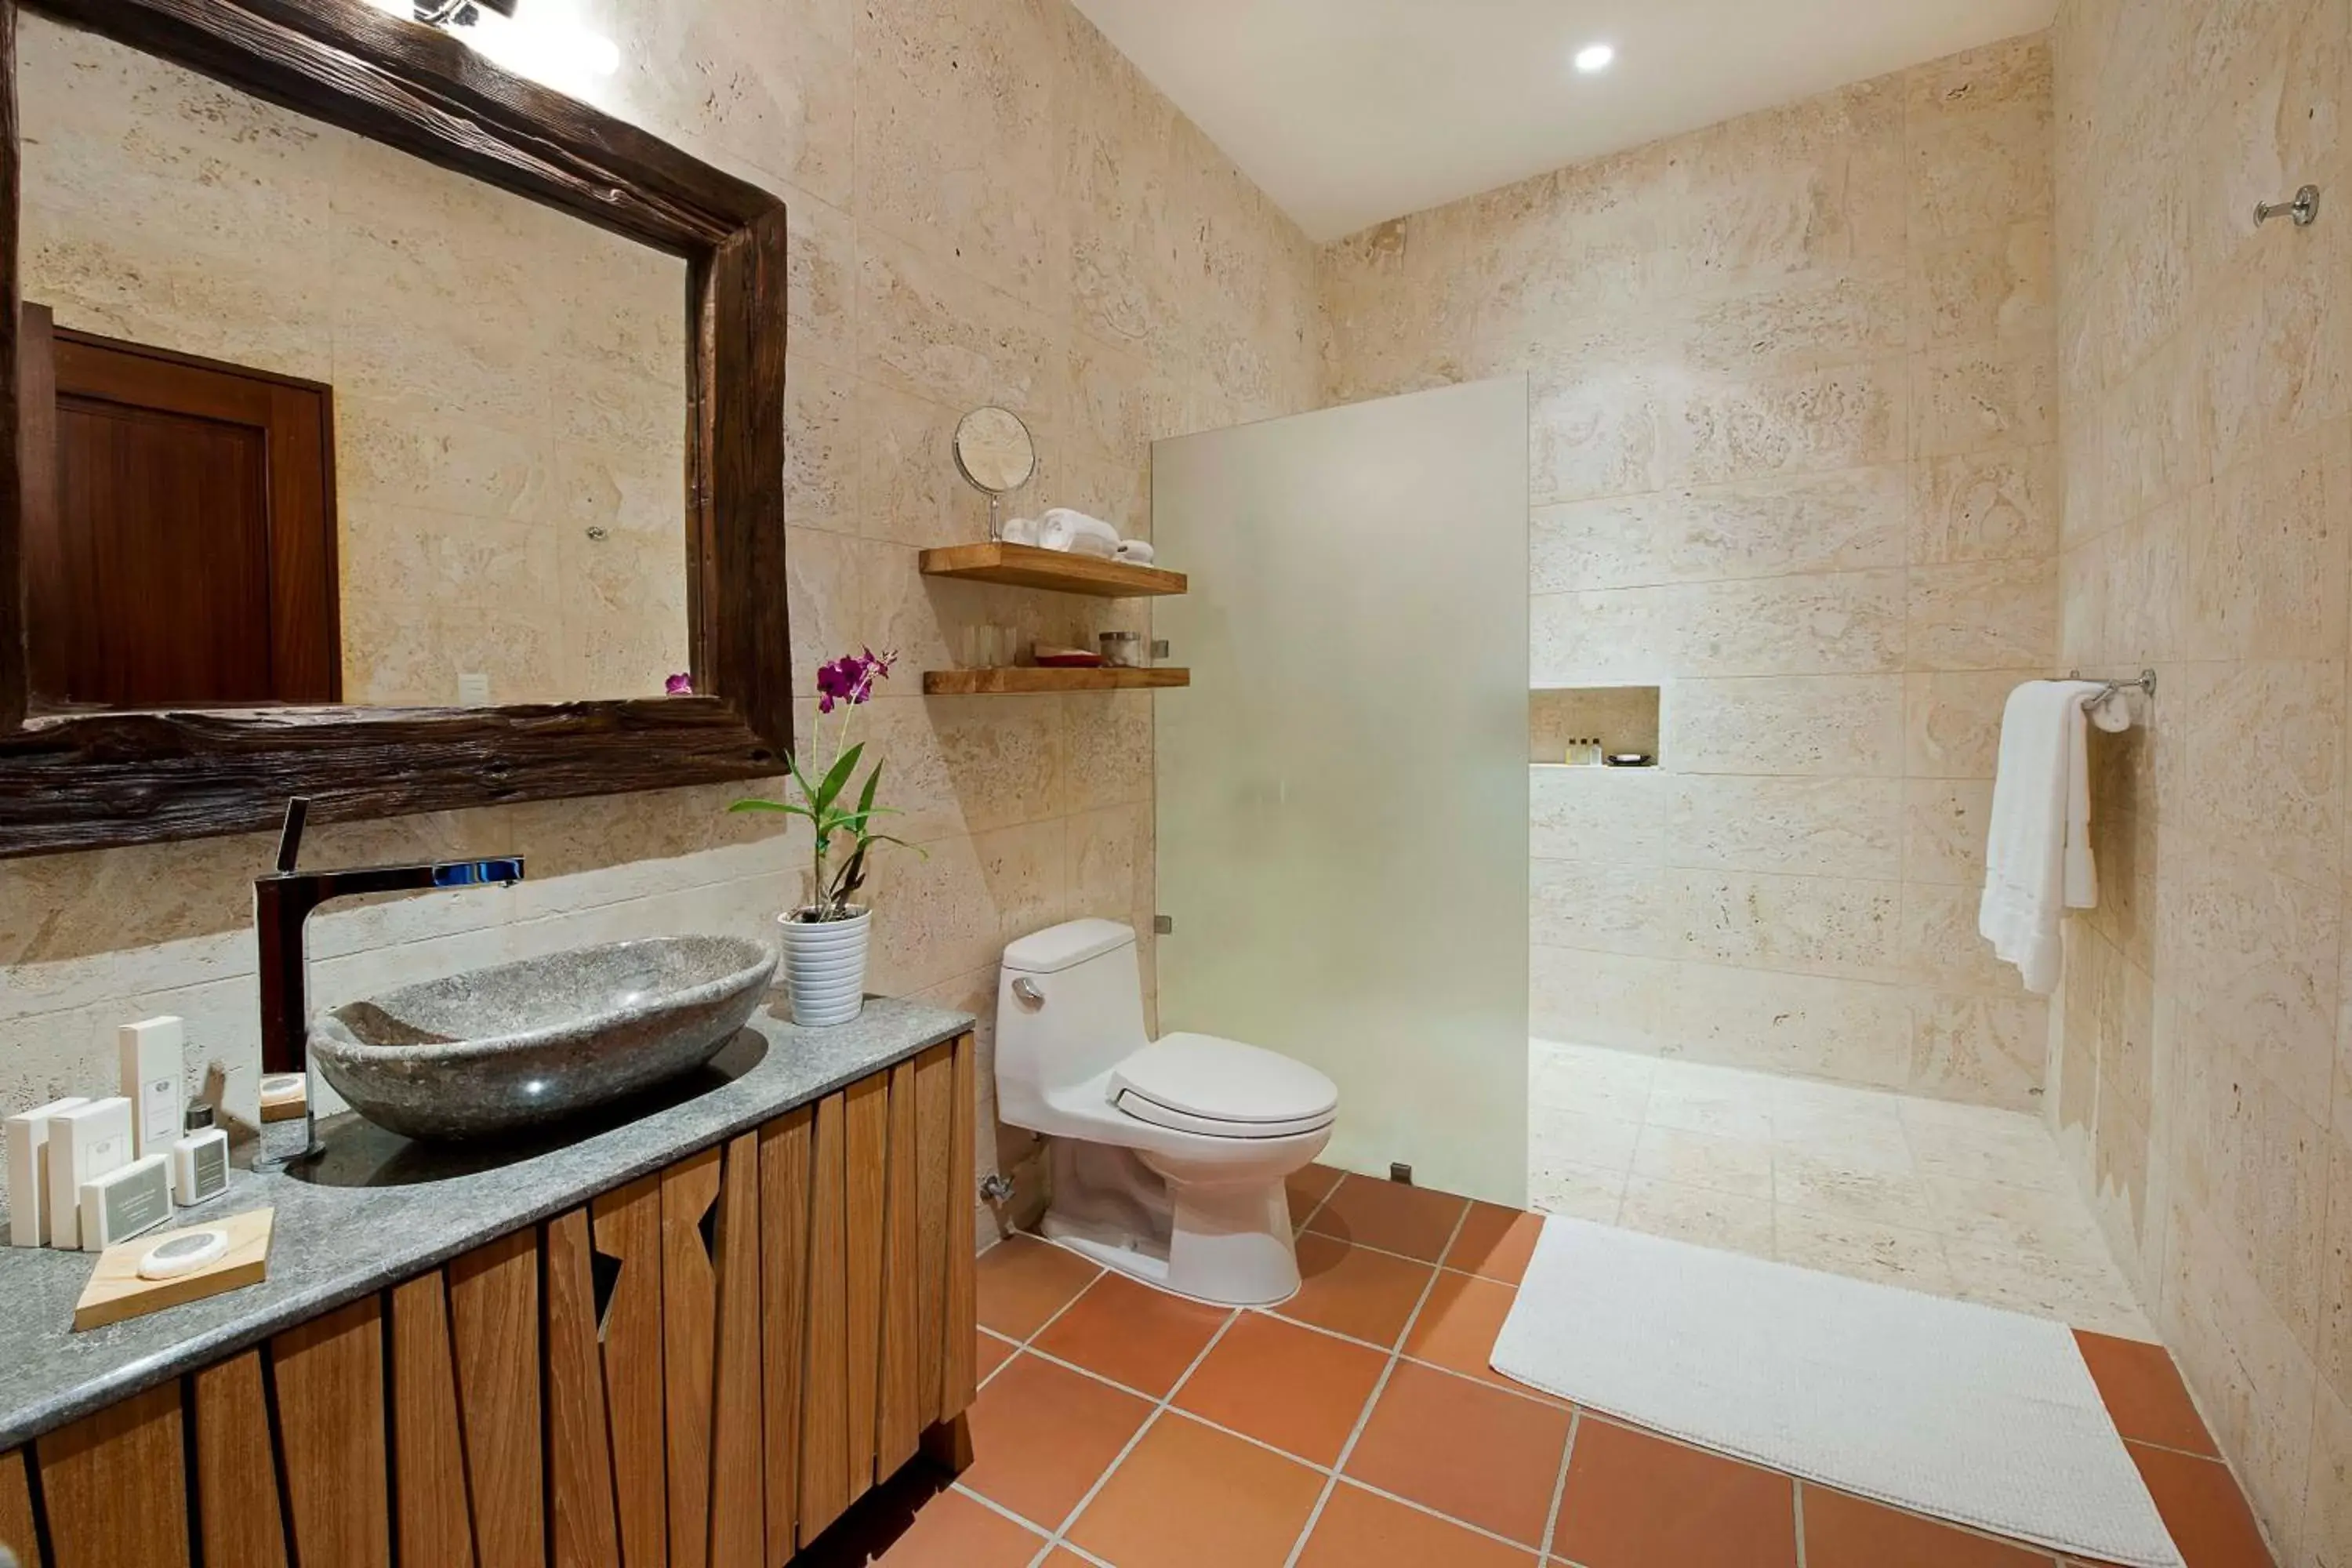 Toilet, Bathroom in Casas del XVI